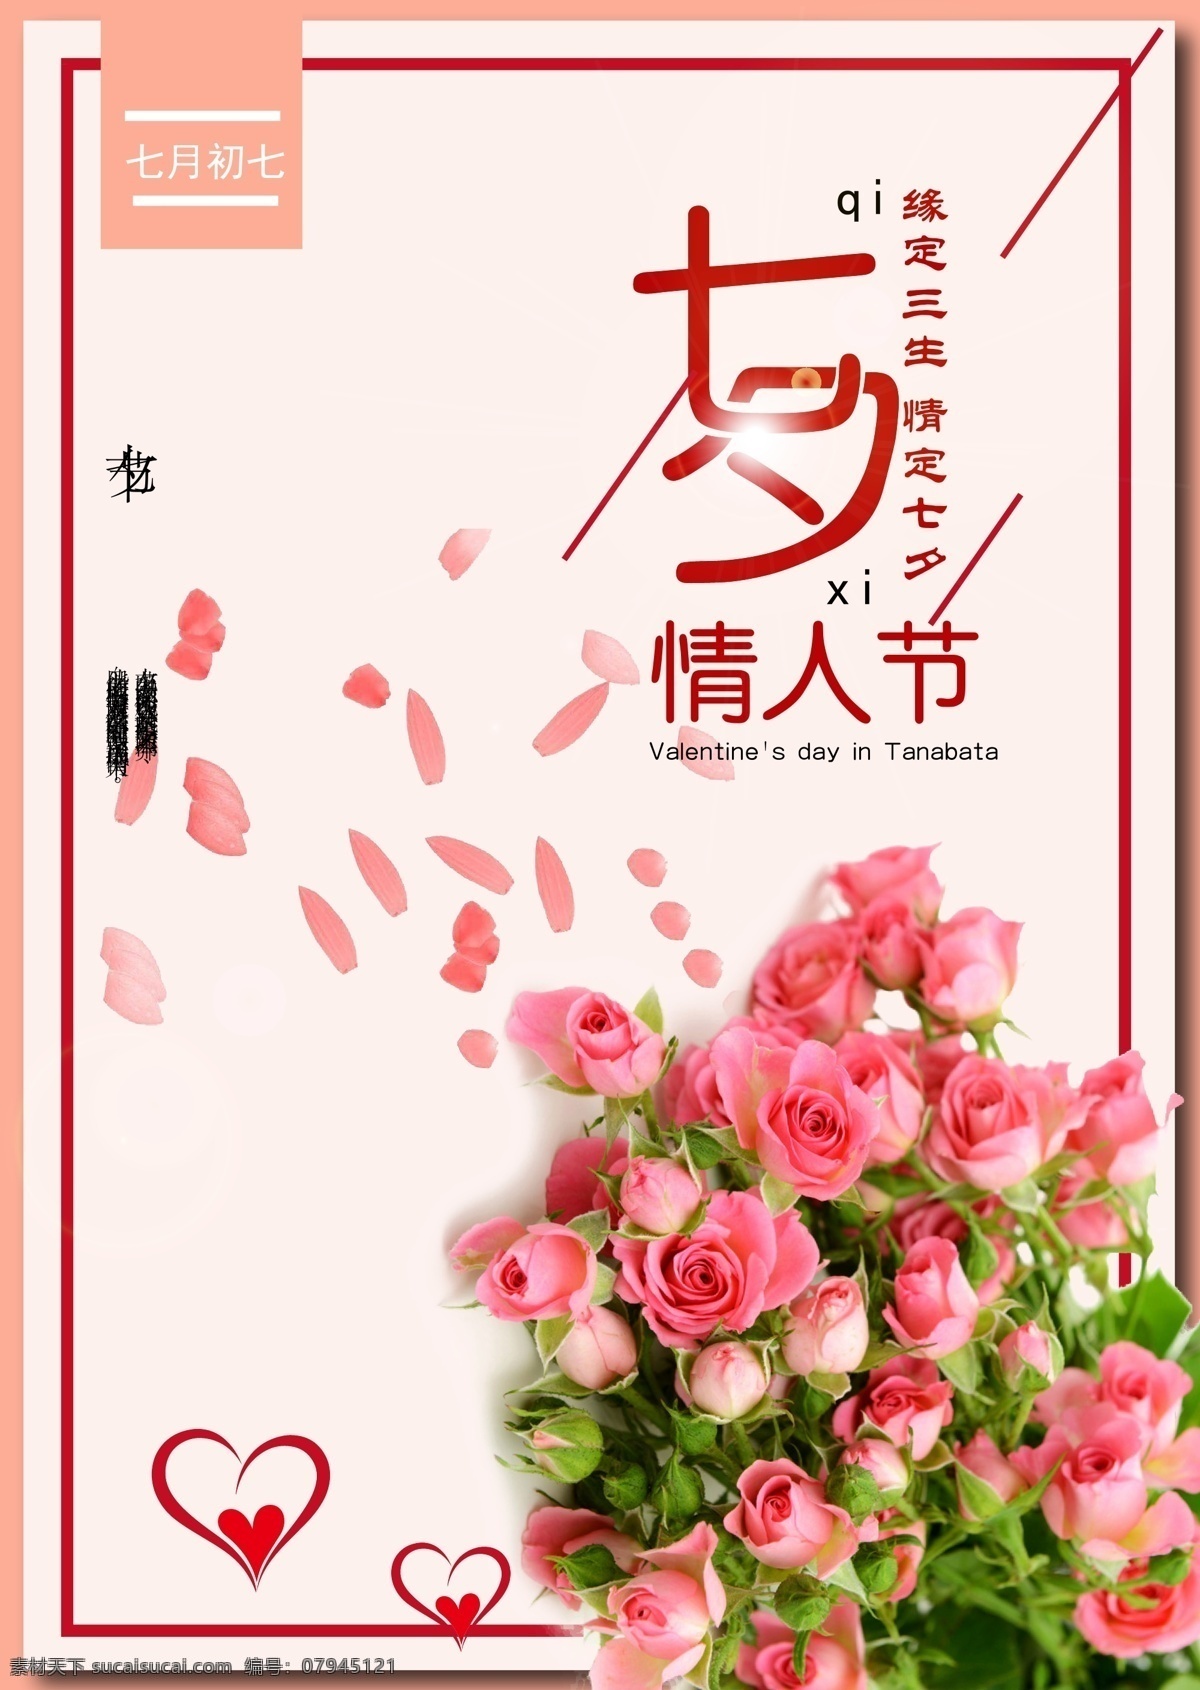 七夕 情人节 宣传部 爱情 节日 展板 牛郎织女 玫瑰 海报